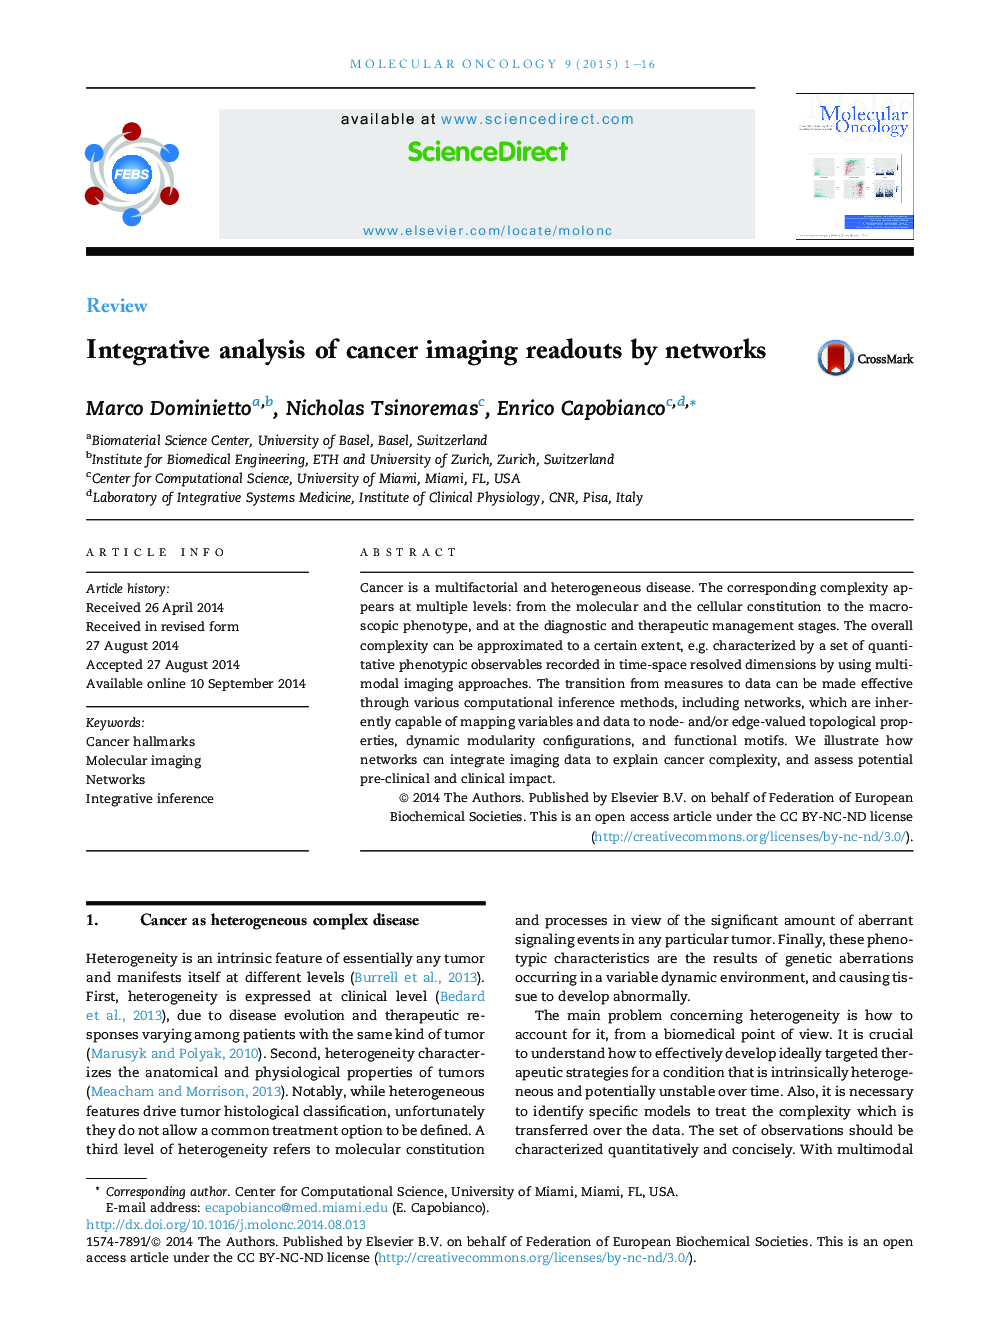 تجزیه و تحلیل یکپارچه از خواندن تصویربرداری سرطان توسط شبکه 